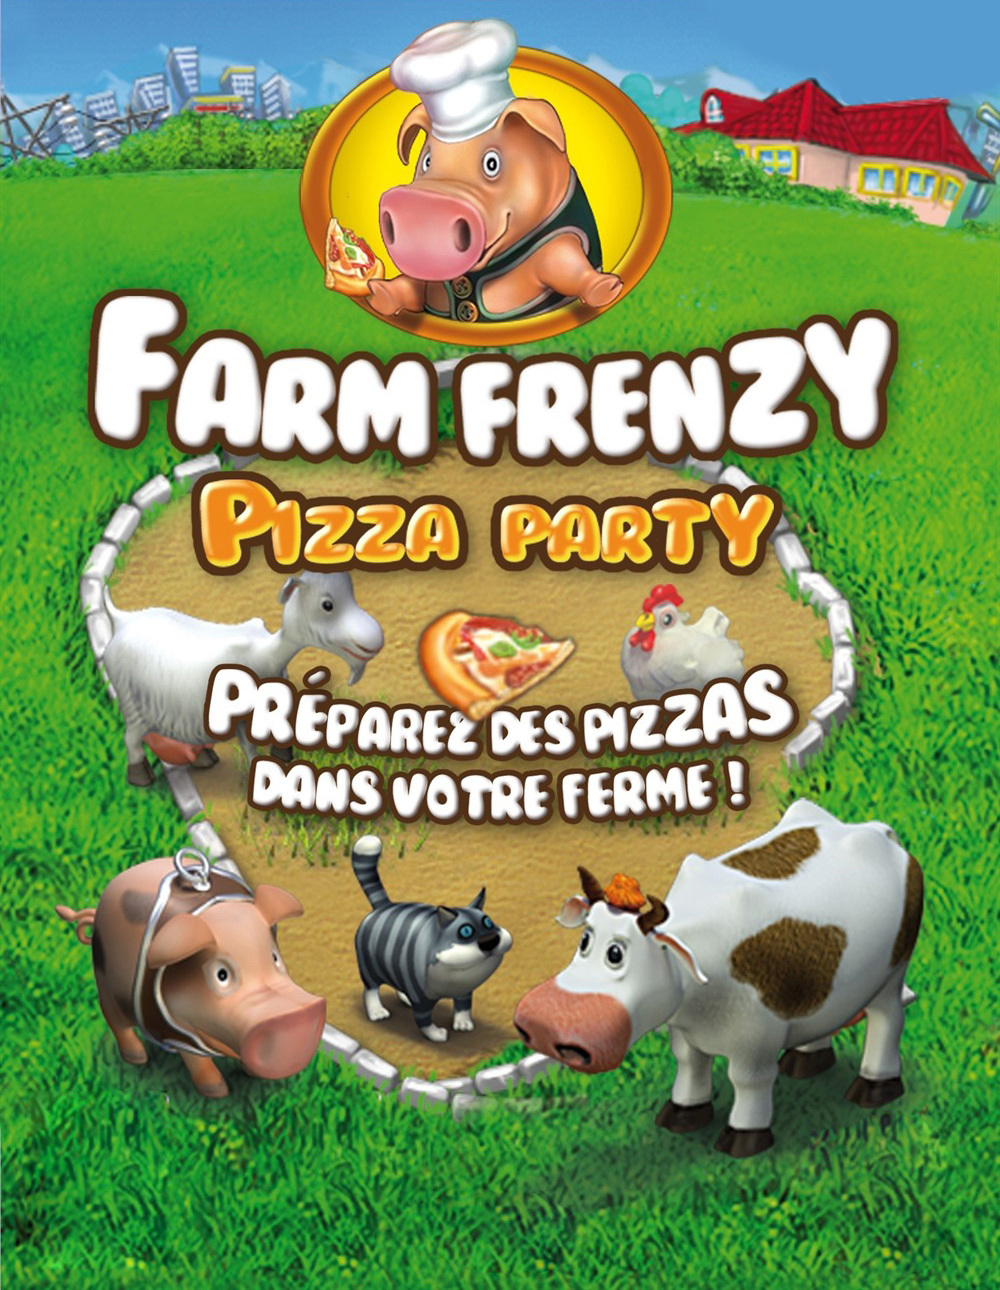 скачать полную версию бесплатно игры веселая ферма печь пиццу фото 102